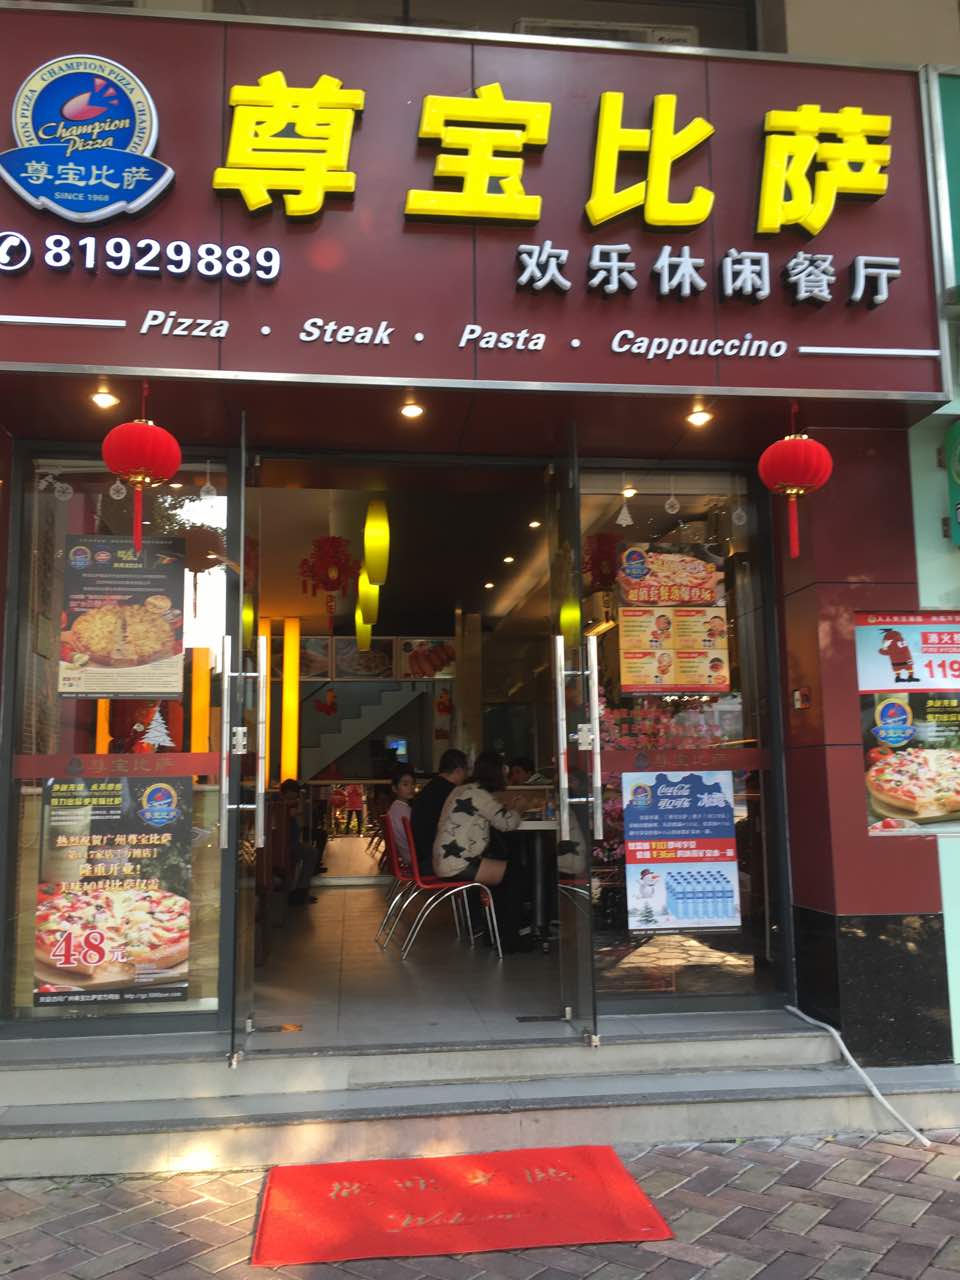 上海尊宝比萨图片